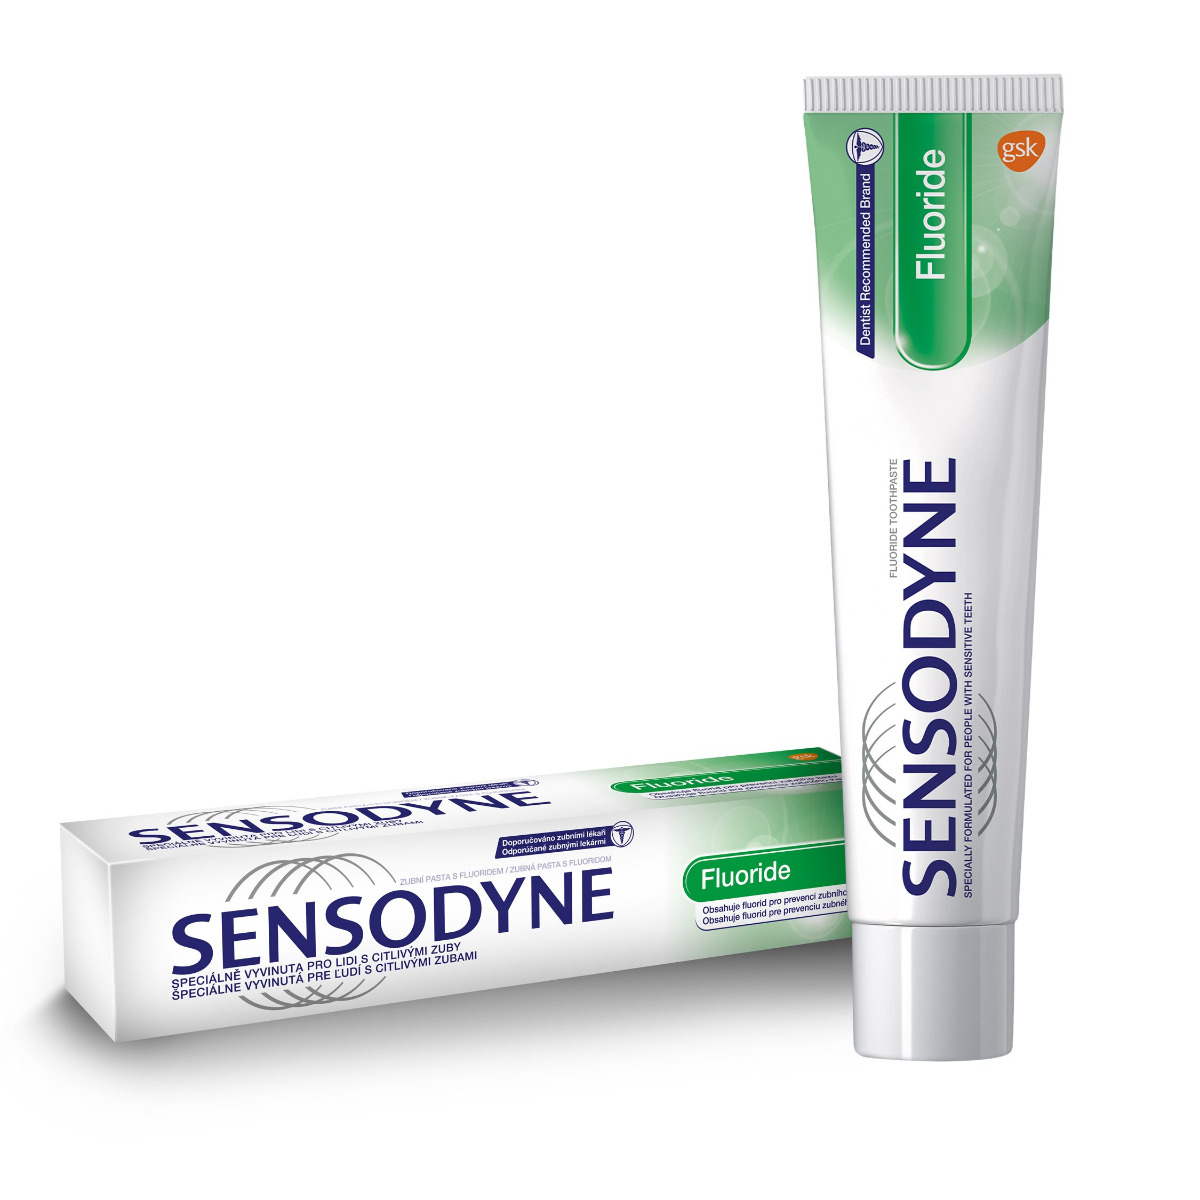 Sensodyne Fluoride zubní pasta 75 ml Sensodyne